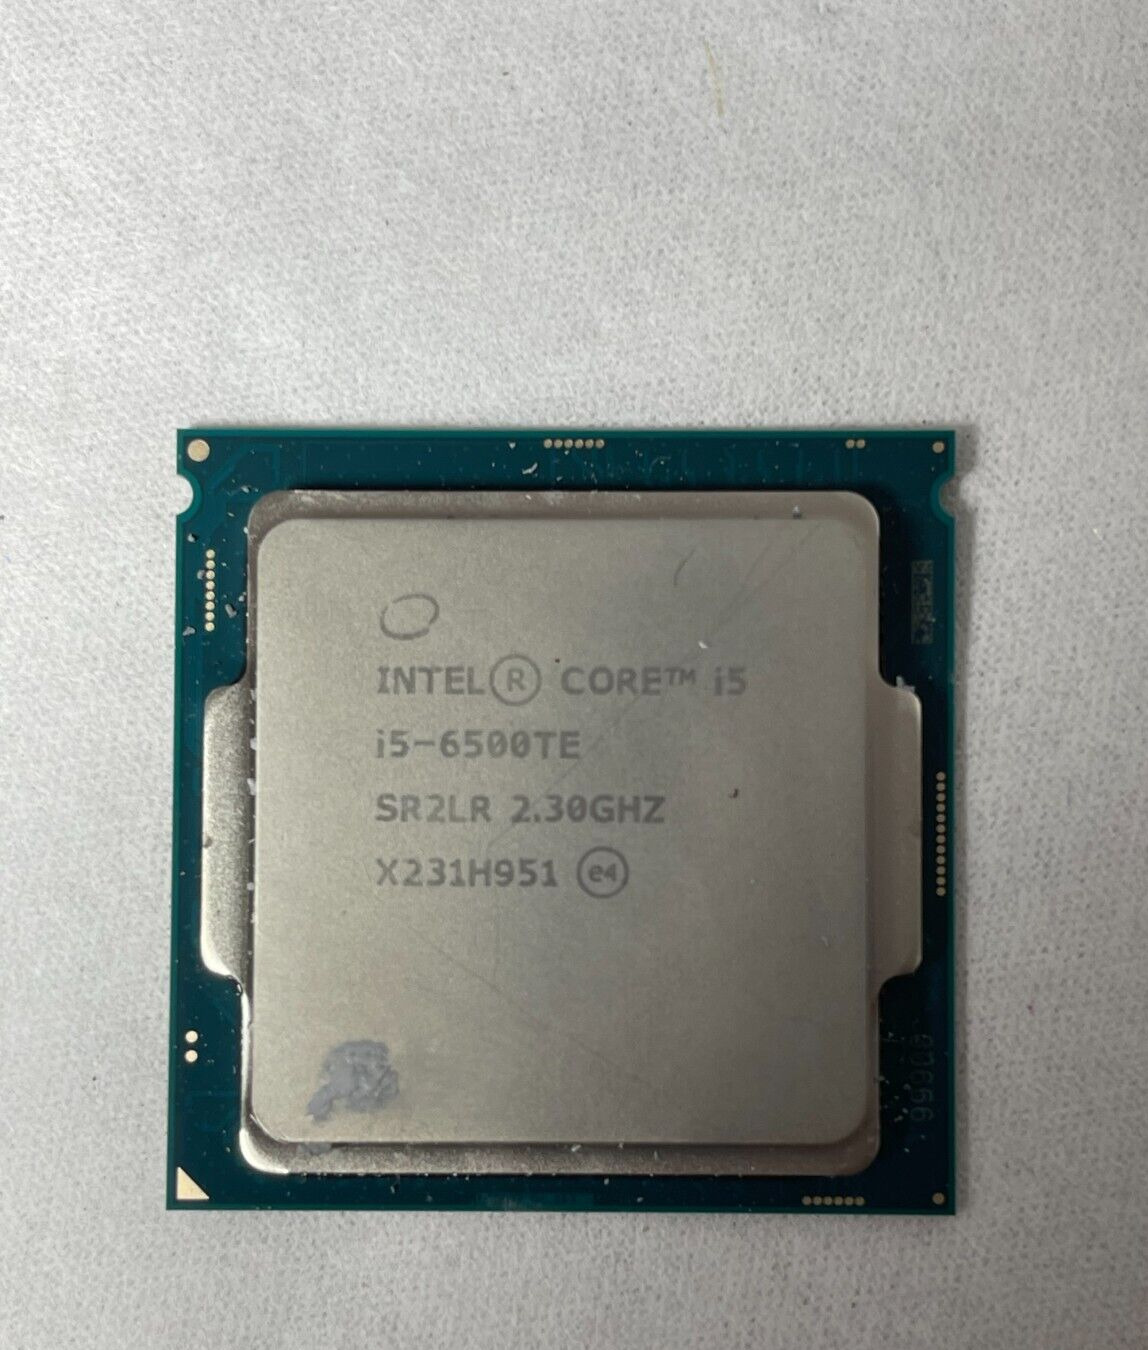 Intel Core i5-6500TE SR2LR 2.3GHz Quad Core LGA 1151 Desktop CPU Processor